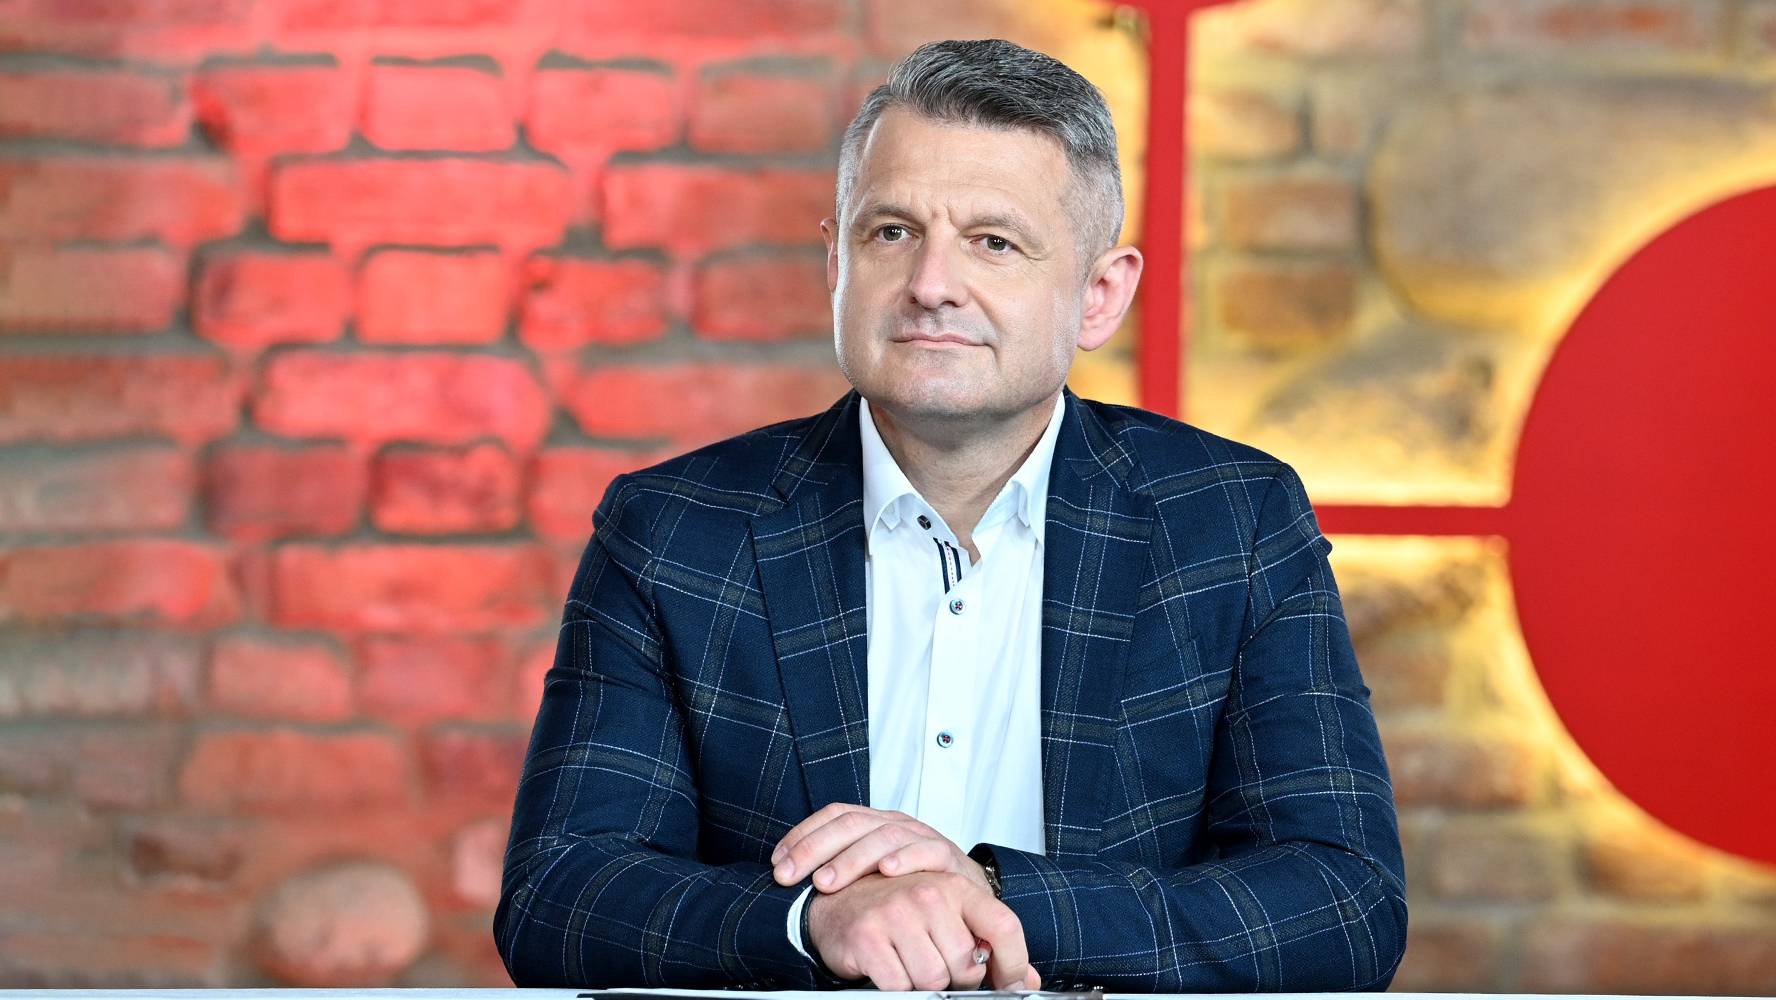 Krzysztof Kobyliński zdradza jakie przedmioty warto kupić - Polsat.pl